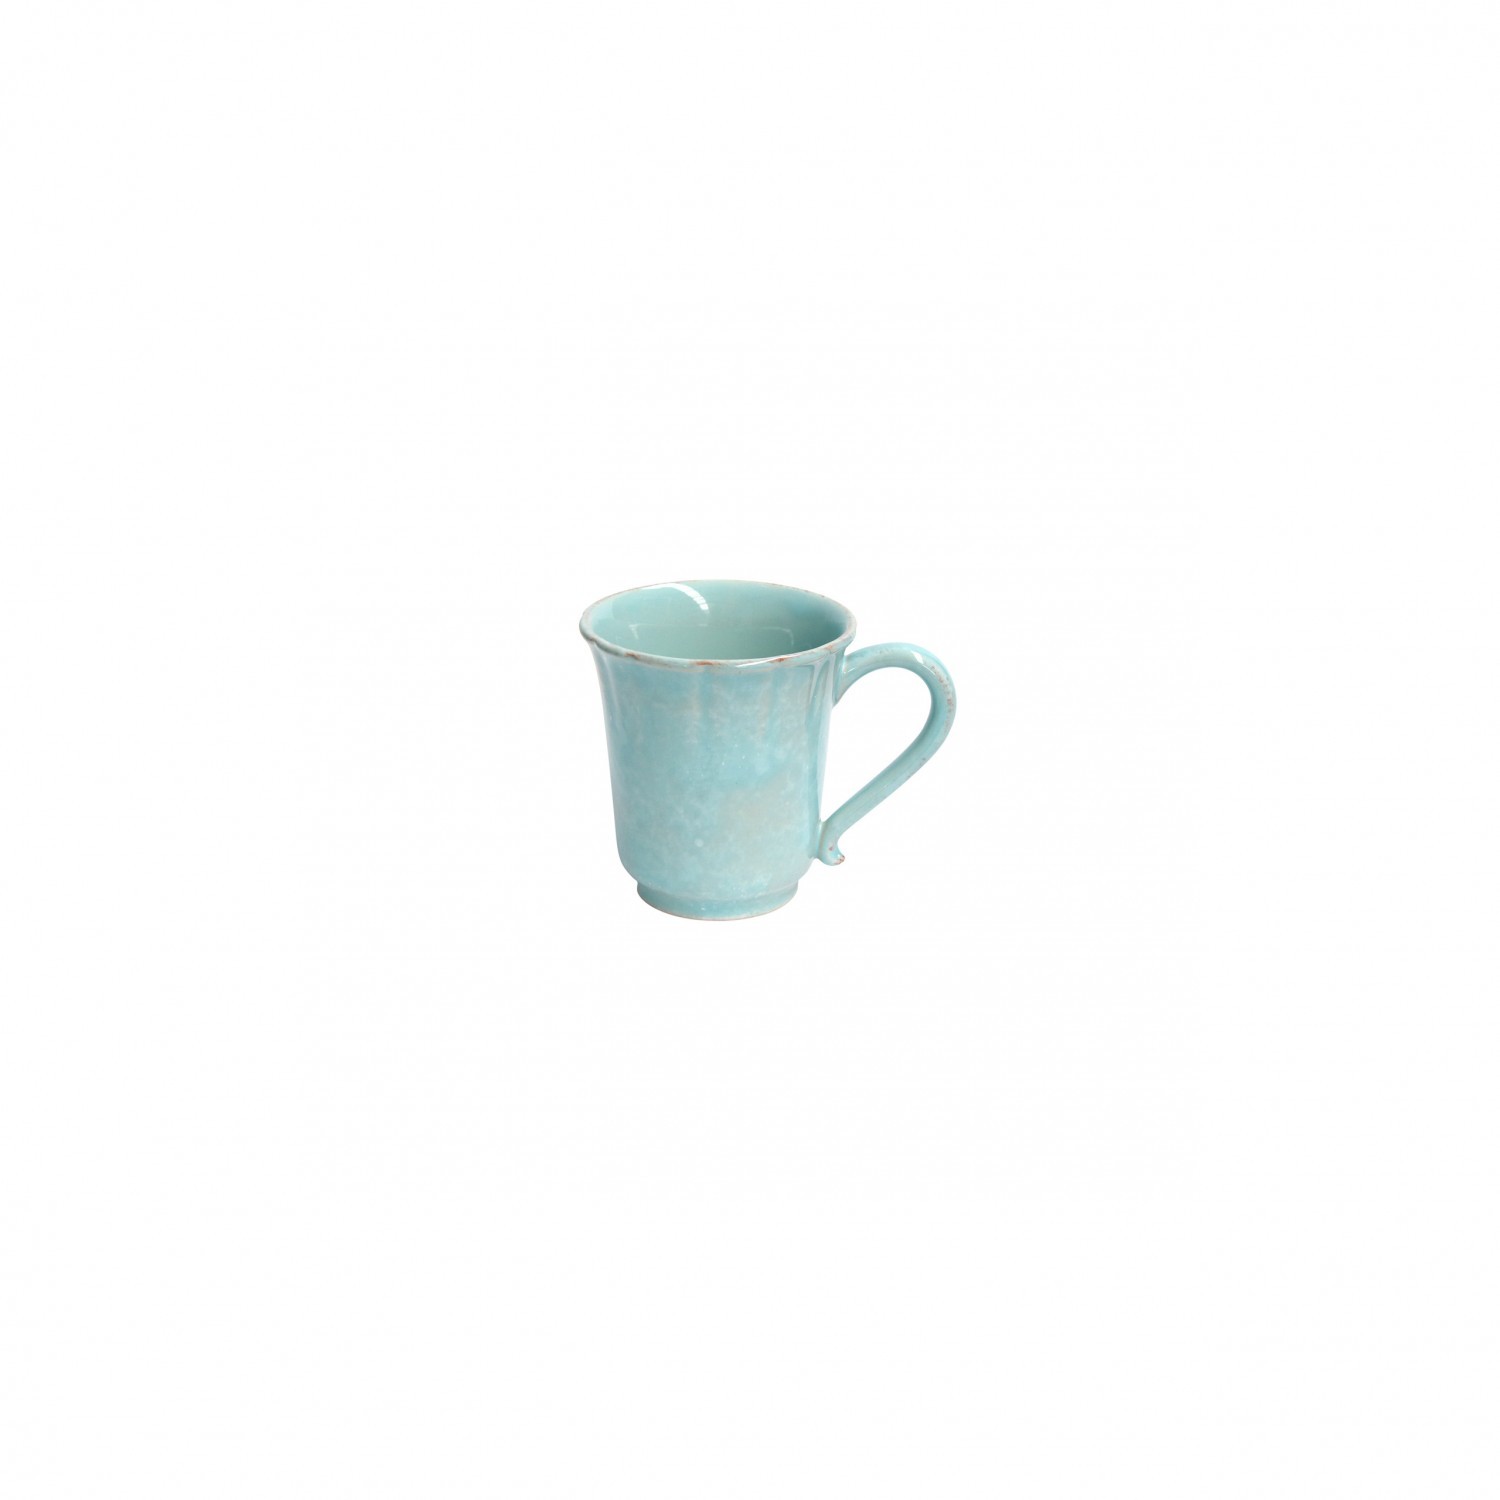 Impressions Turquoise Mug 0.32l Gift